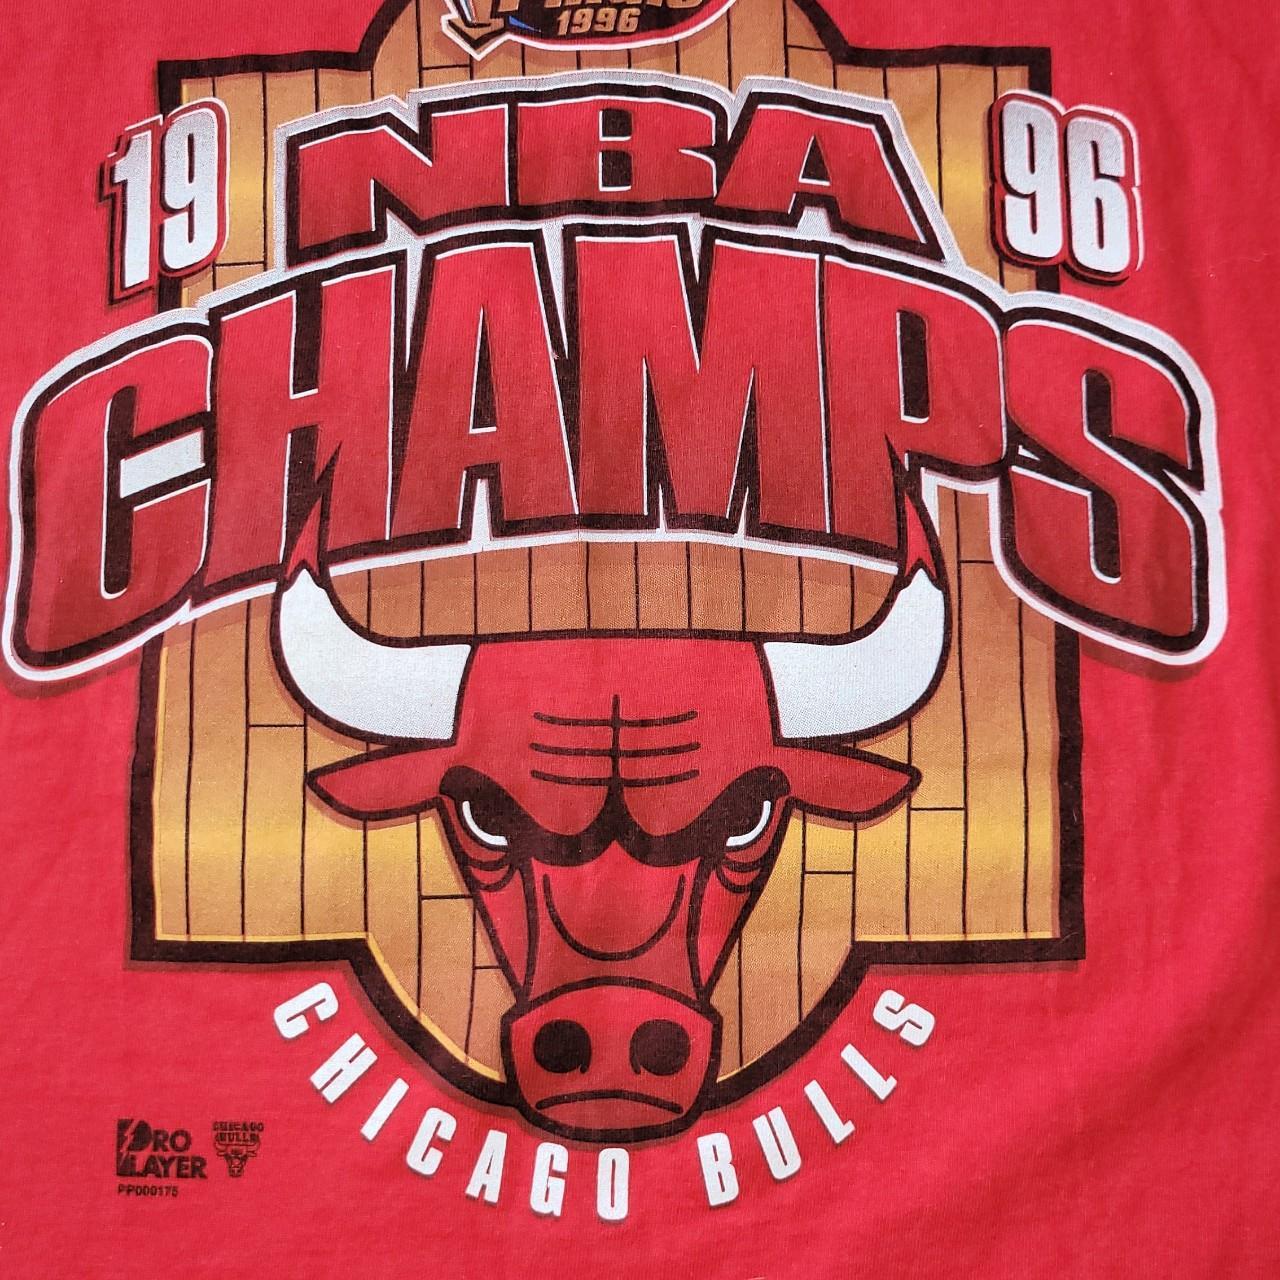 Chicago bulls 1996 NBA finals black shirt sz L runs - Depop